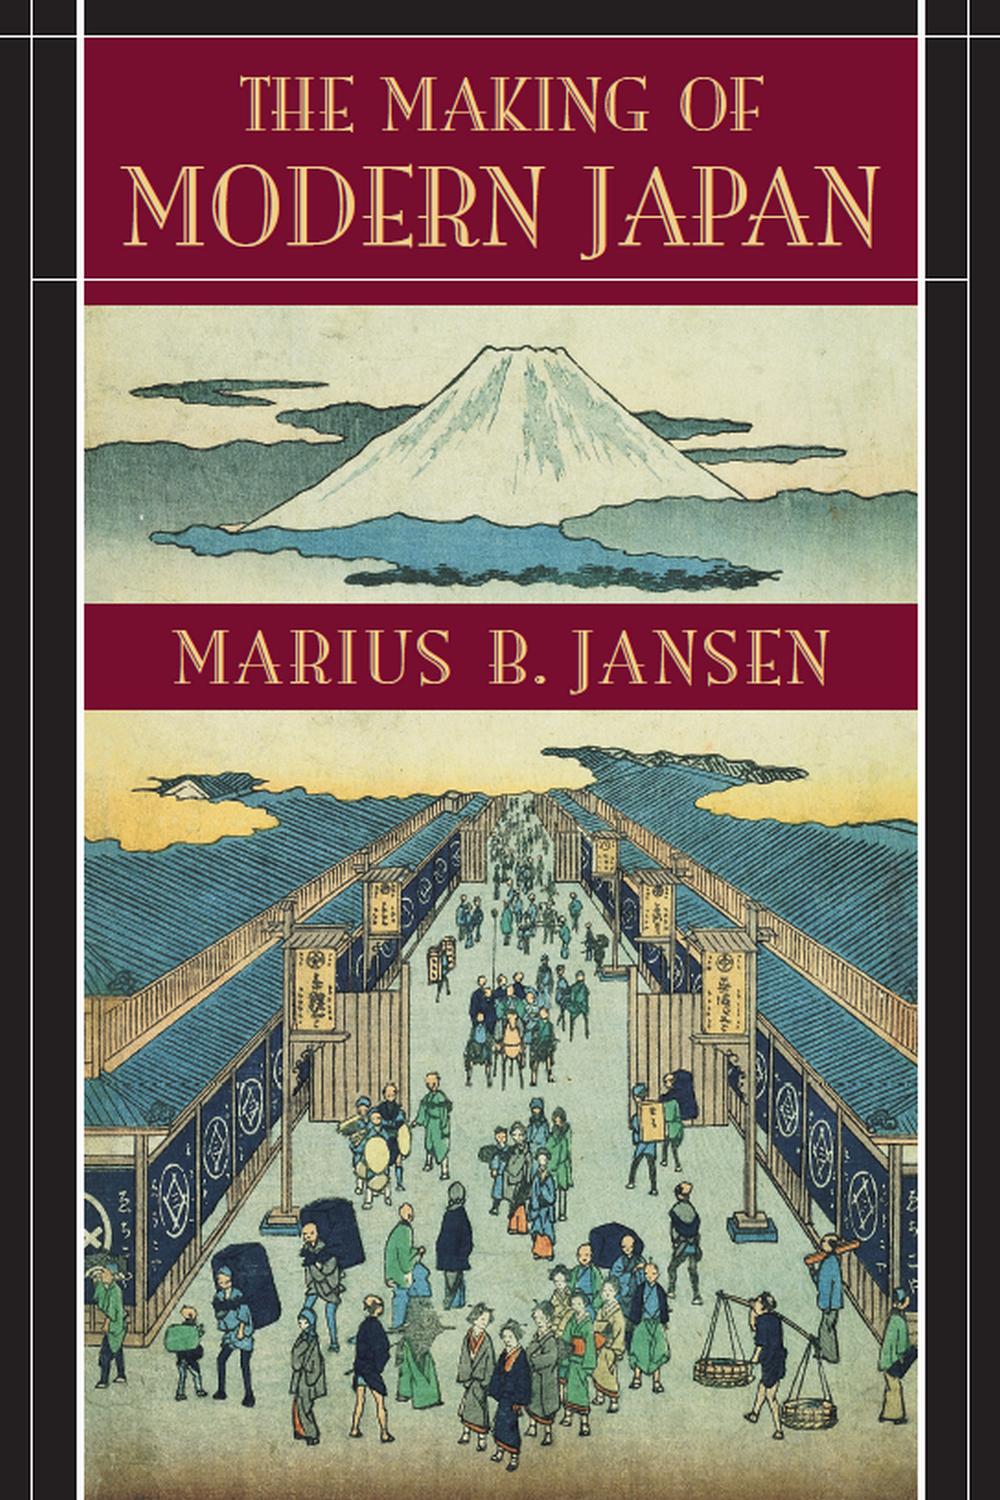 The Making of Modern Japan - Marius B.  Jansen